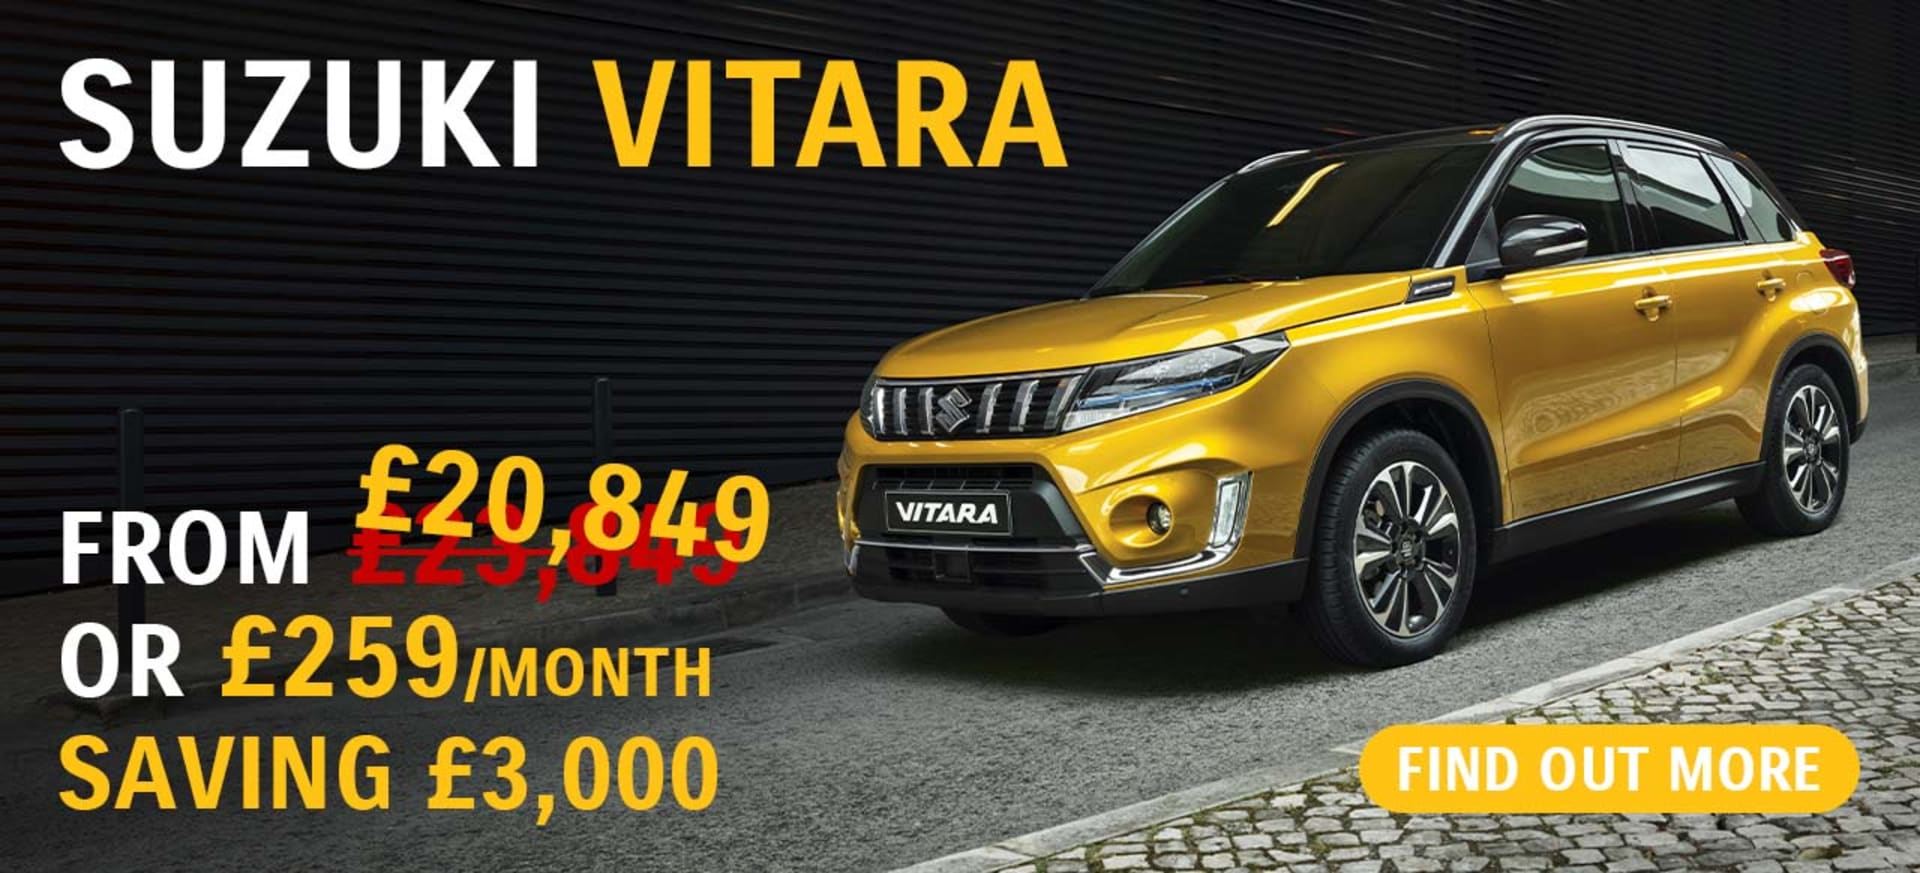 Suzuki Vitara Offers